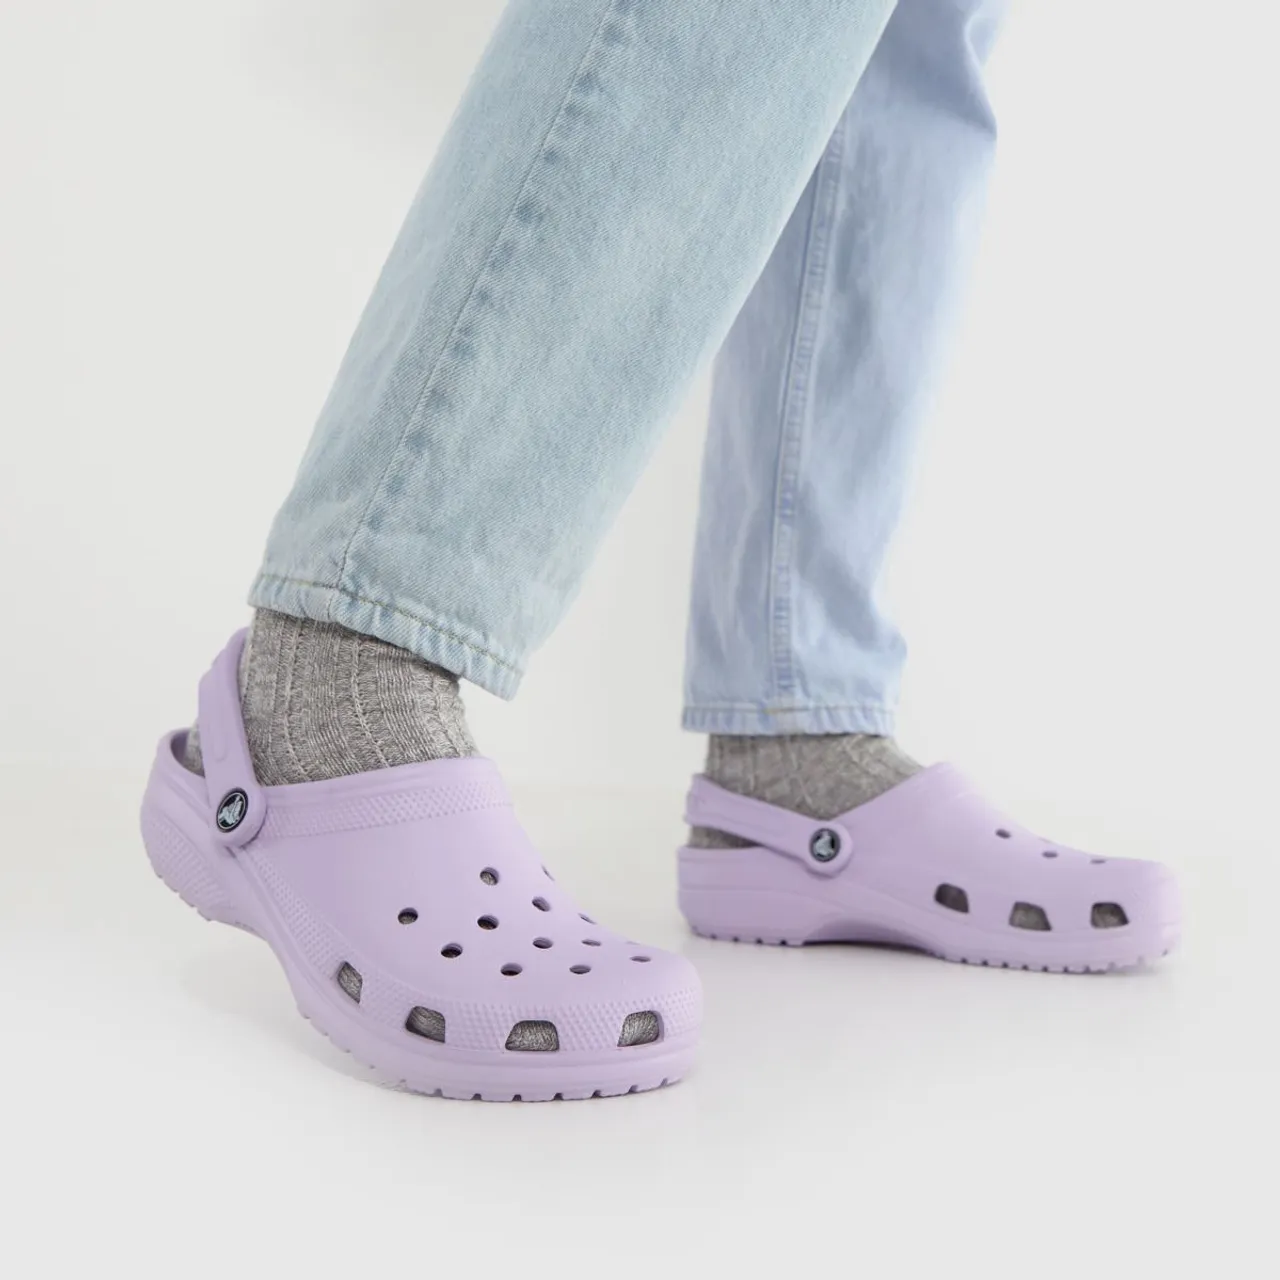 Crocs Classic Clog Sandals In Lilac